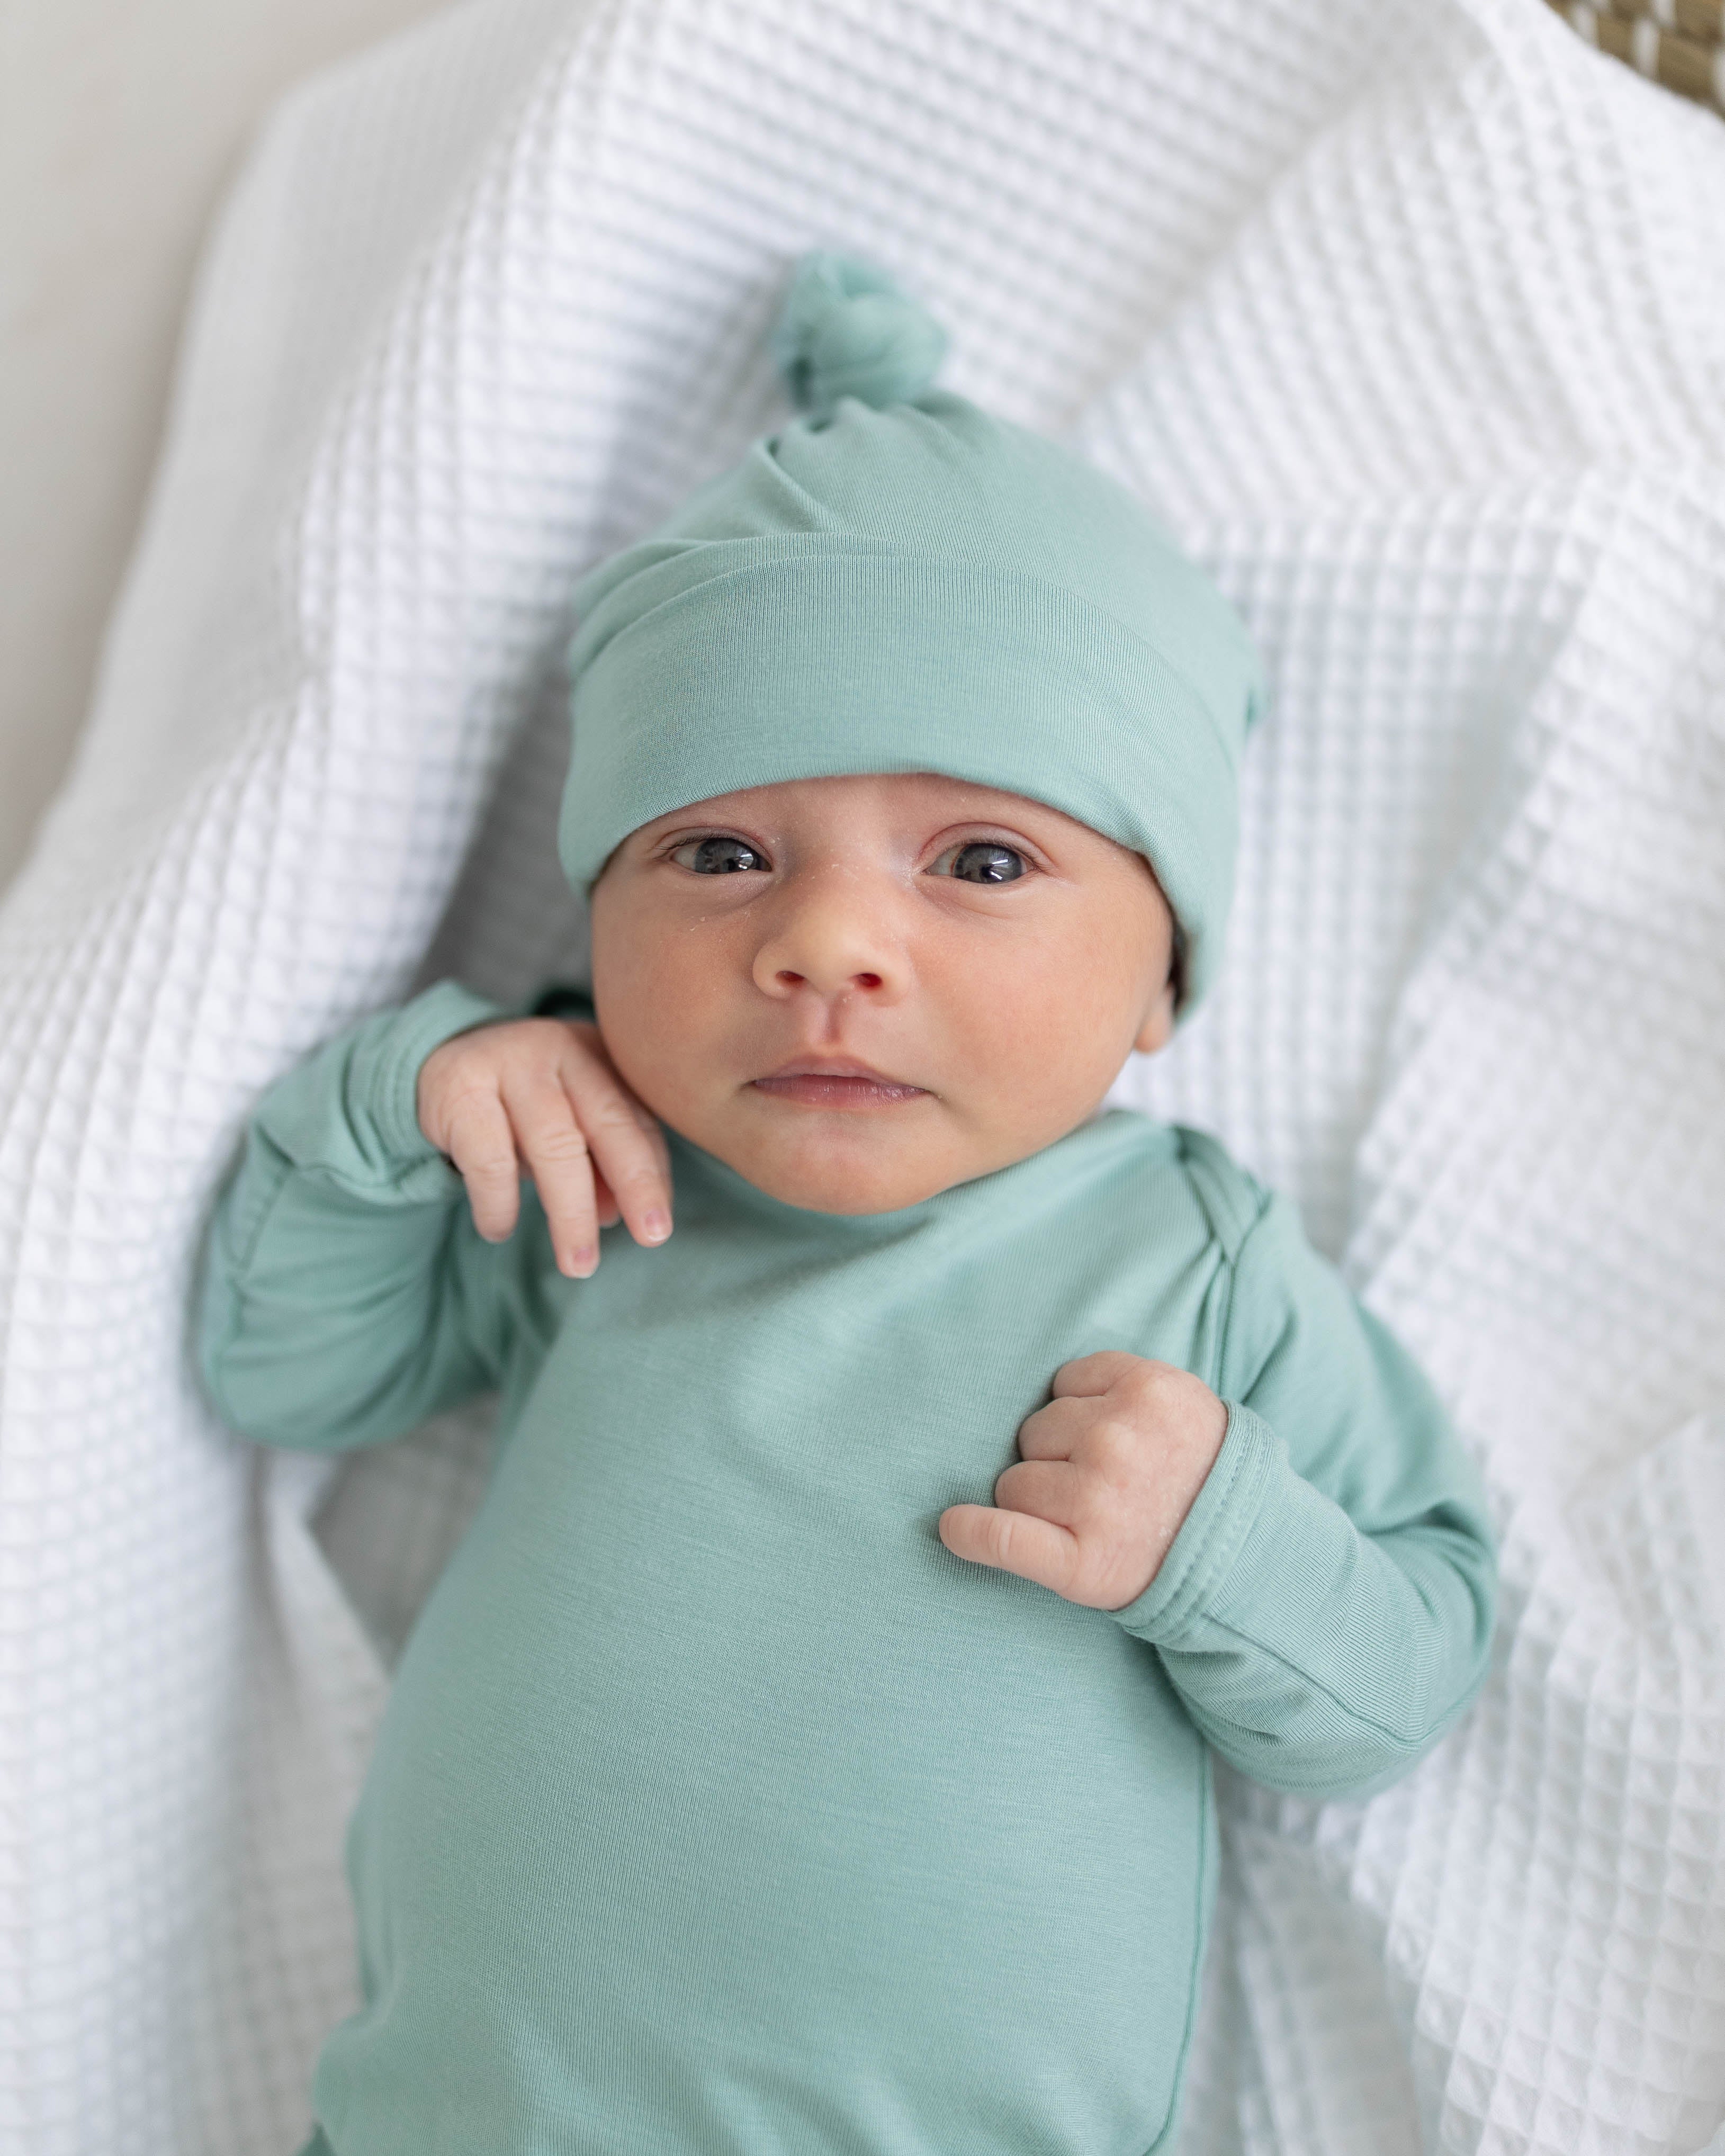 Stroller Society Newborn Baby Gown and Hat Set - Crew Neck Style - (Newborn-3 Months) Navy Blue / Hat